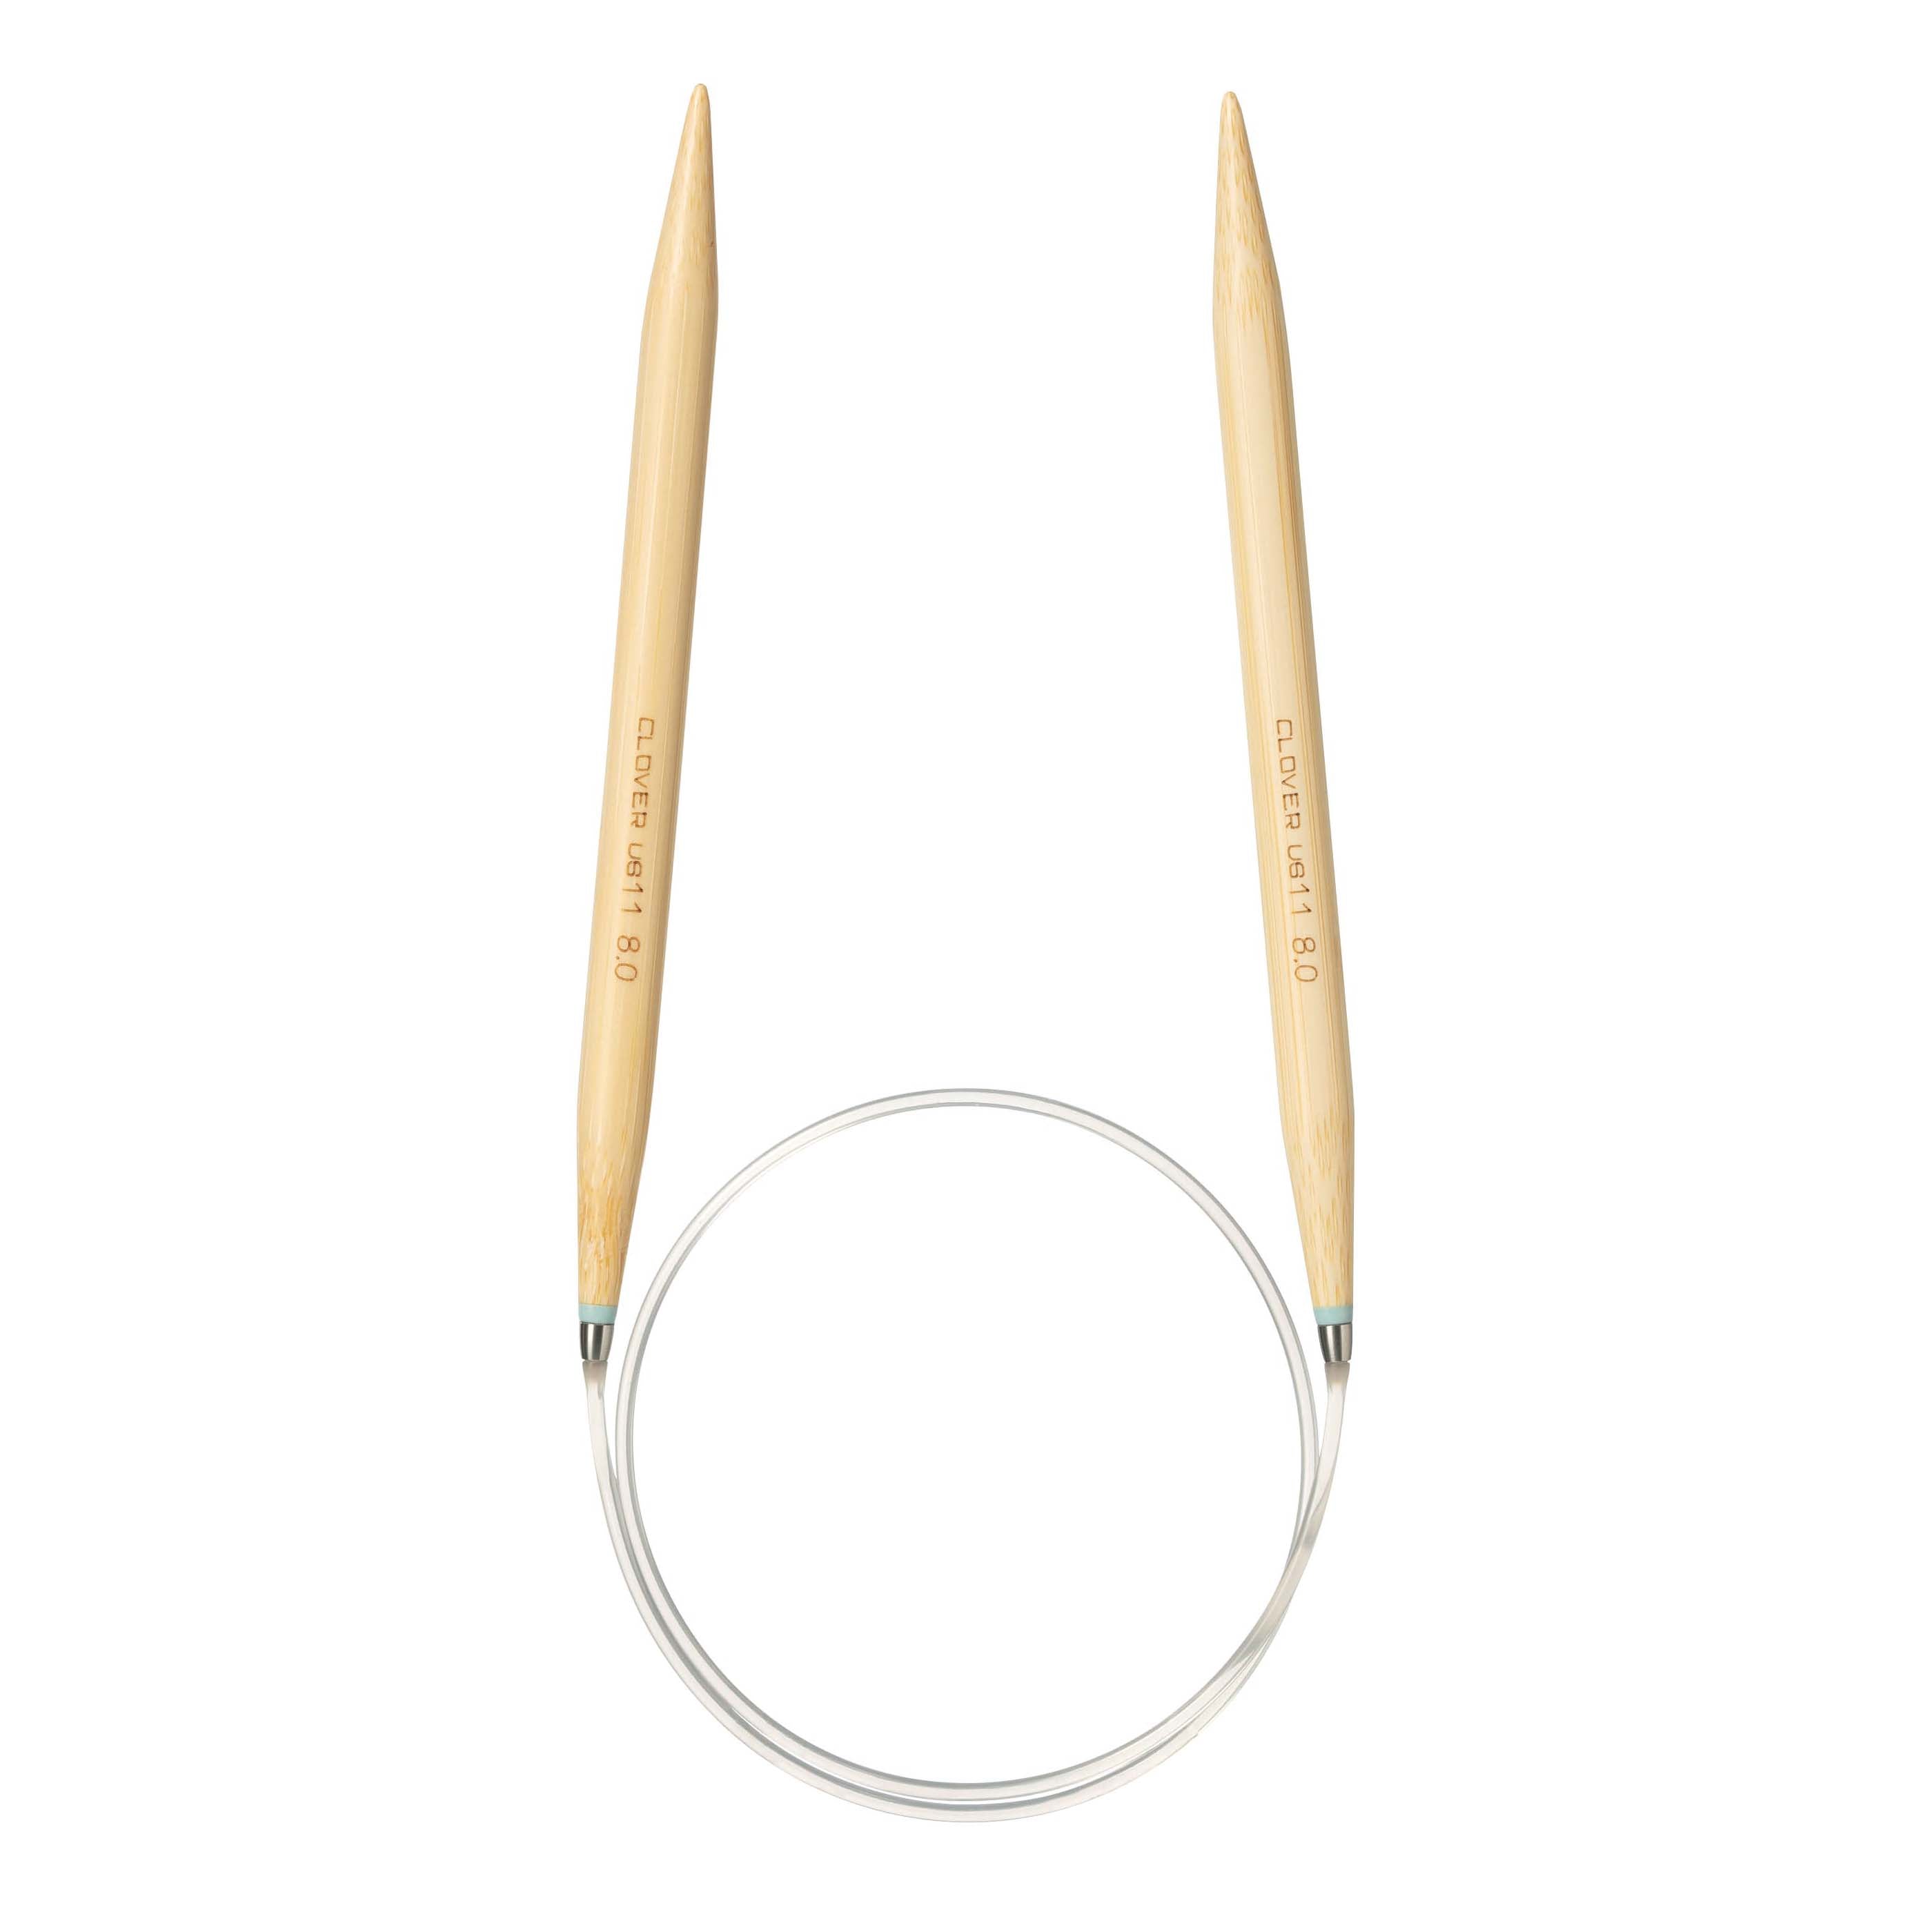 ChiaoGoo Bamboo Circular Knitting Needles: 24 Inch (60 cm) Cable